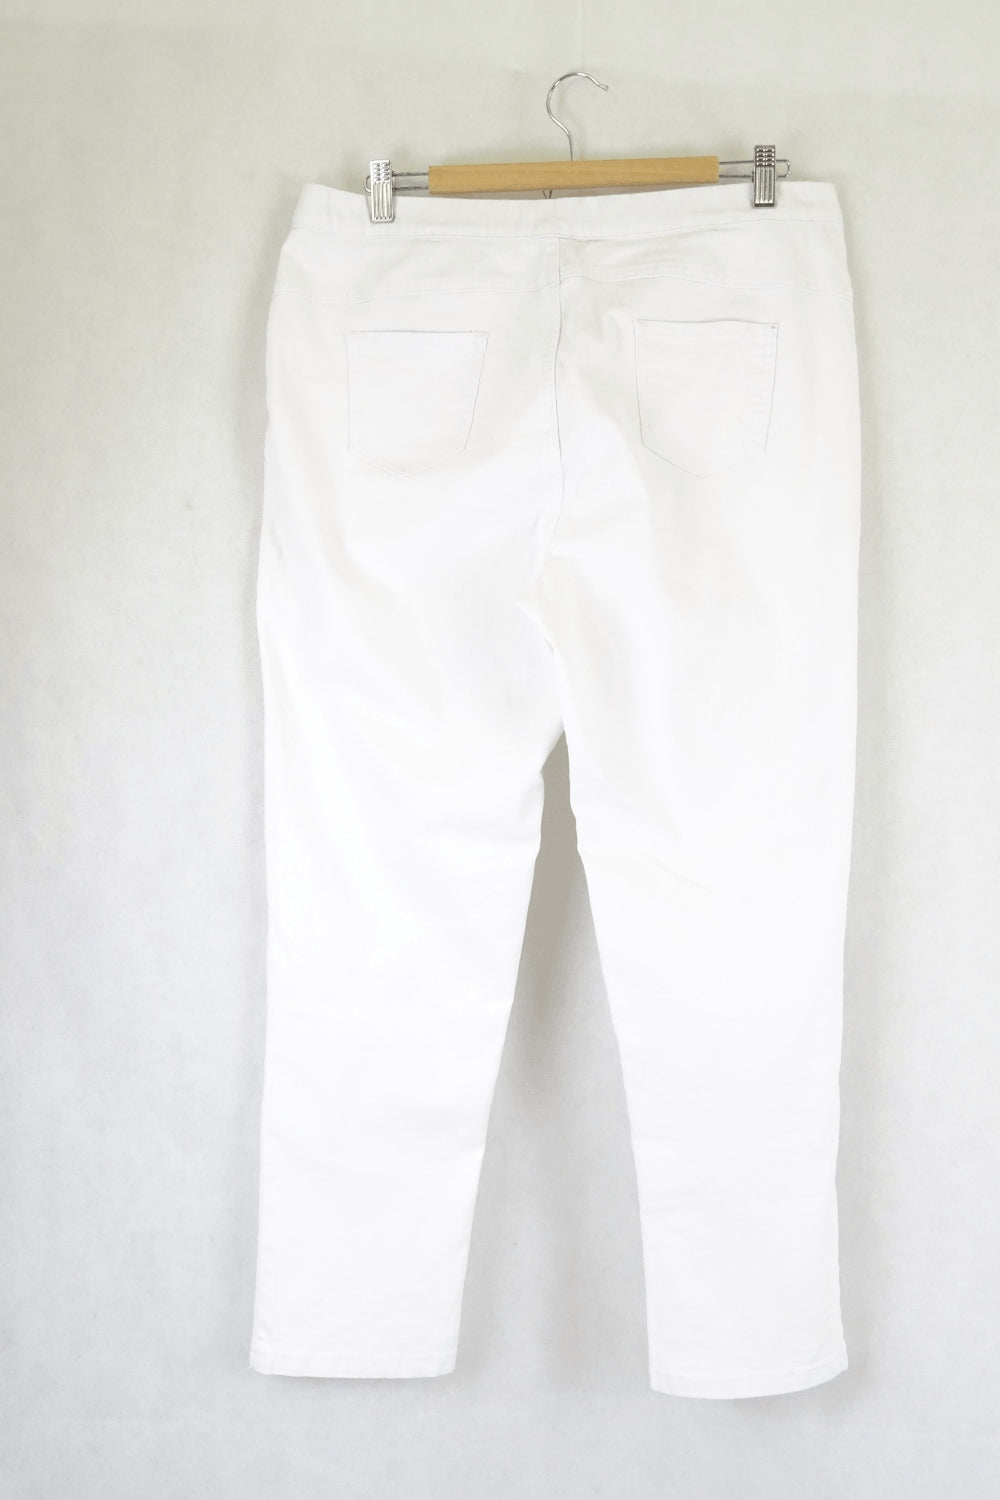 Basics White Pants L